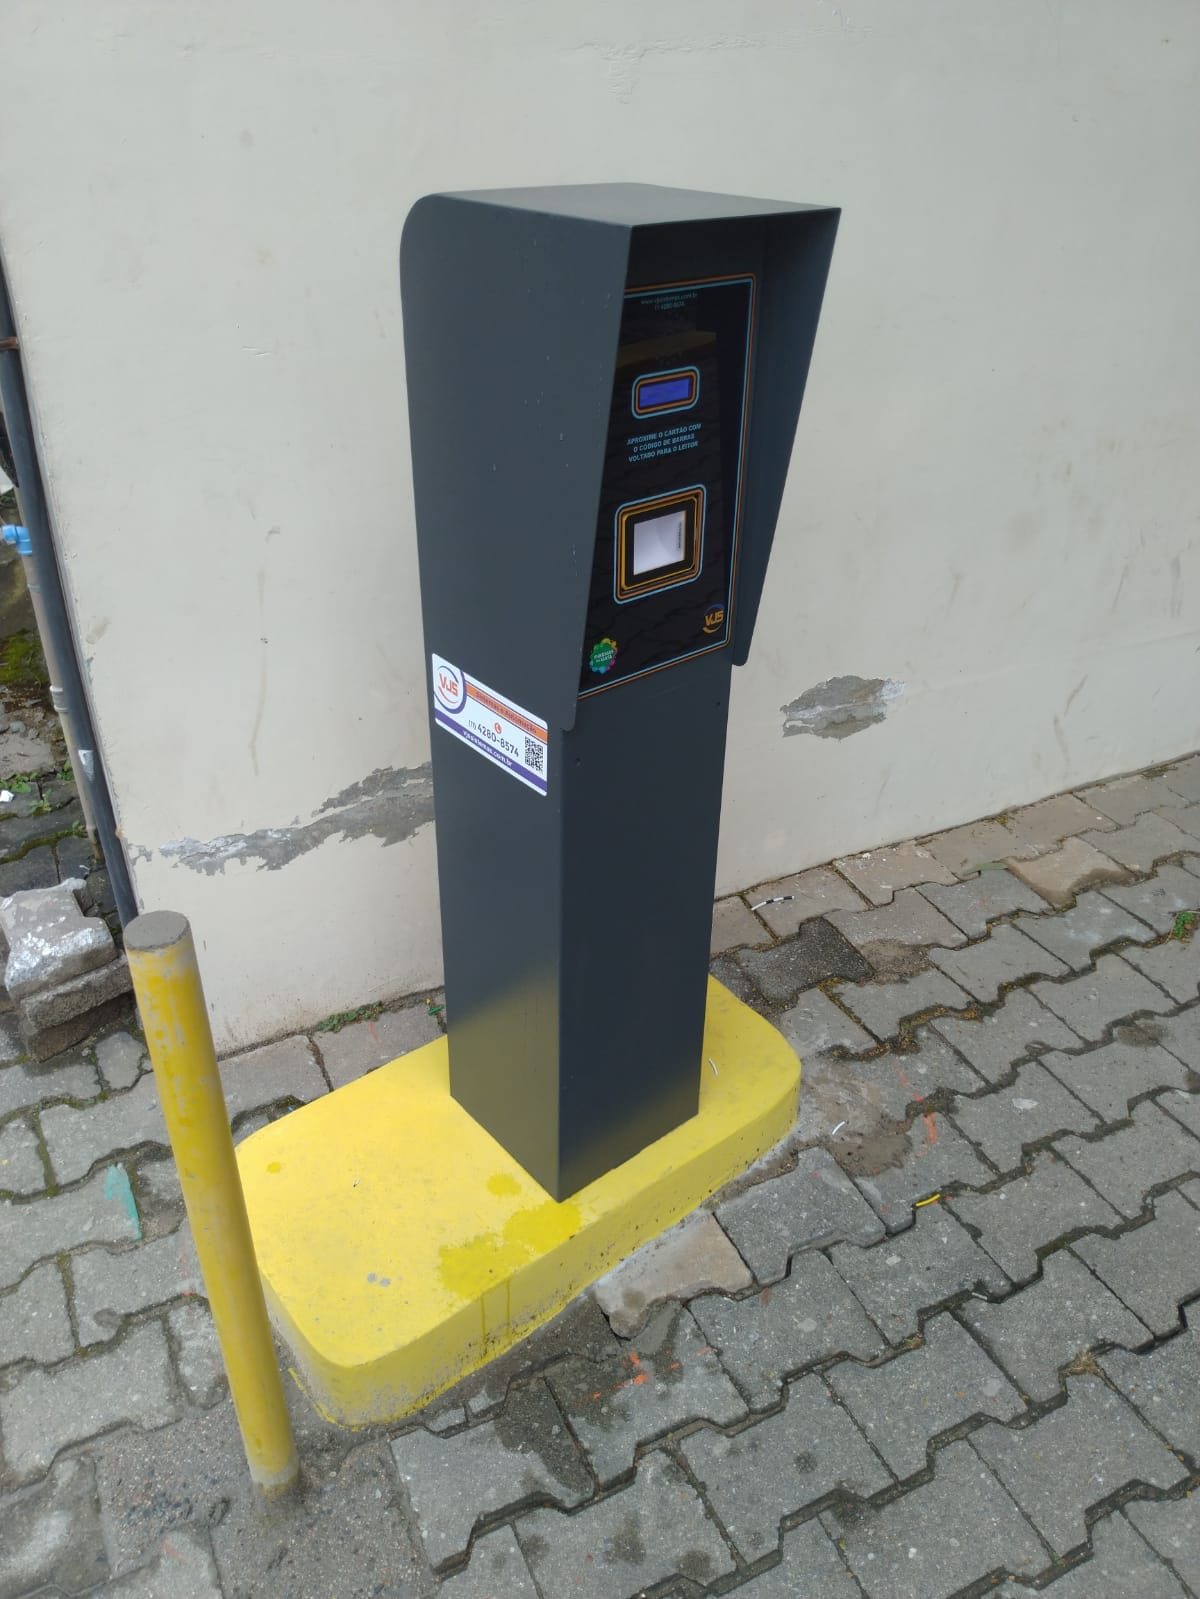 Saiba mais sobre Sistemas de pagamento automático em estacionamentos: a automação de estacionamento da VJS Sistemas clicando aqui